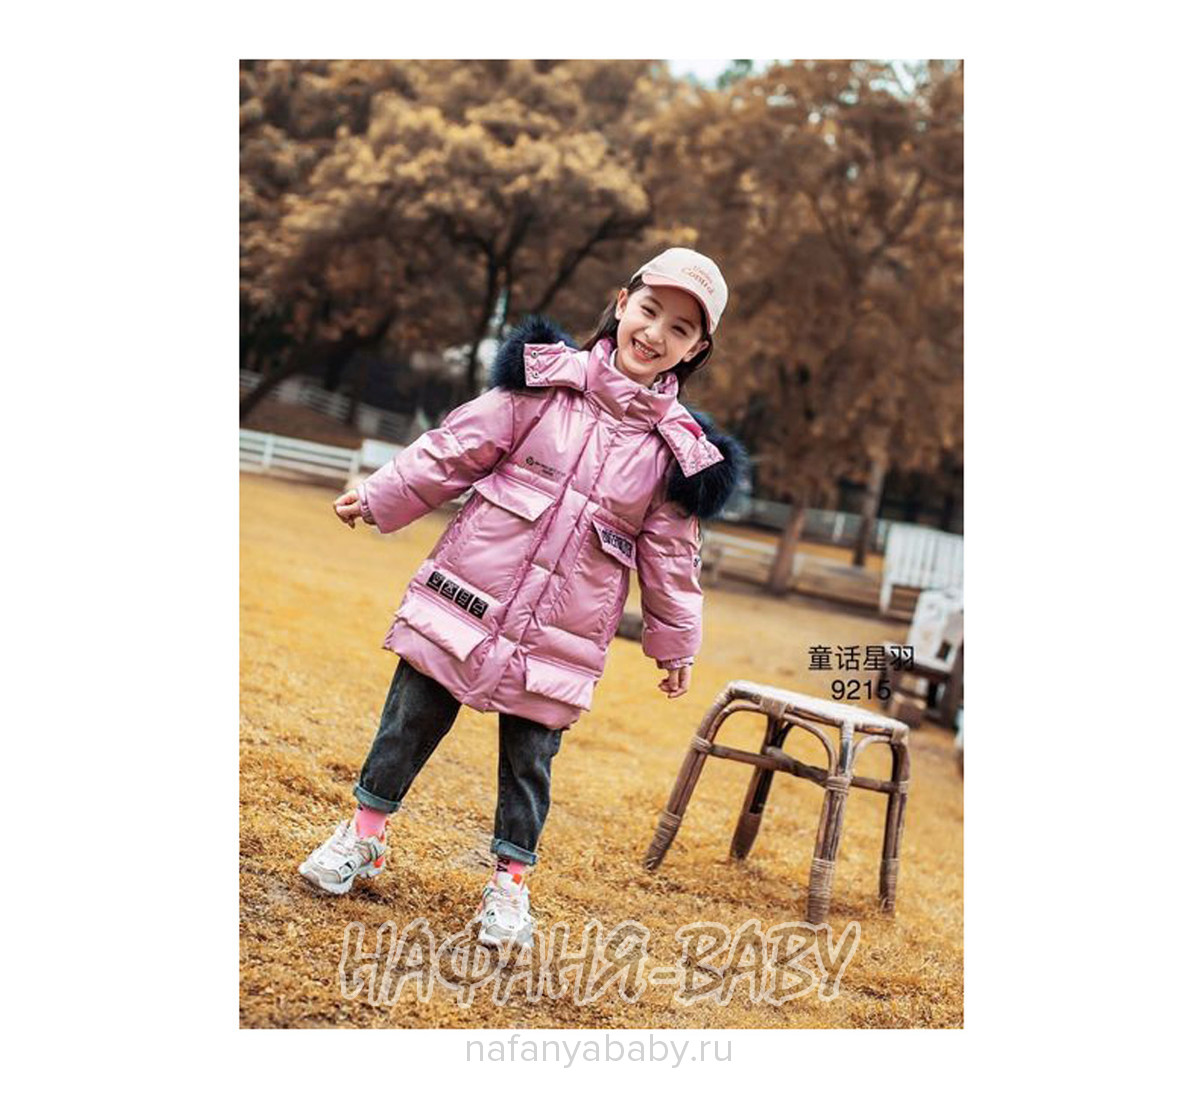 Зимняя удлиненная куртка-пуховик MAY JM, купить в интернет магазине Нафаня. арт: 9215.